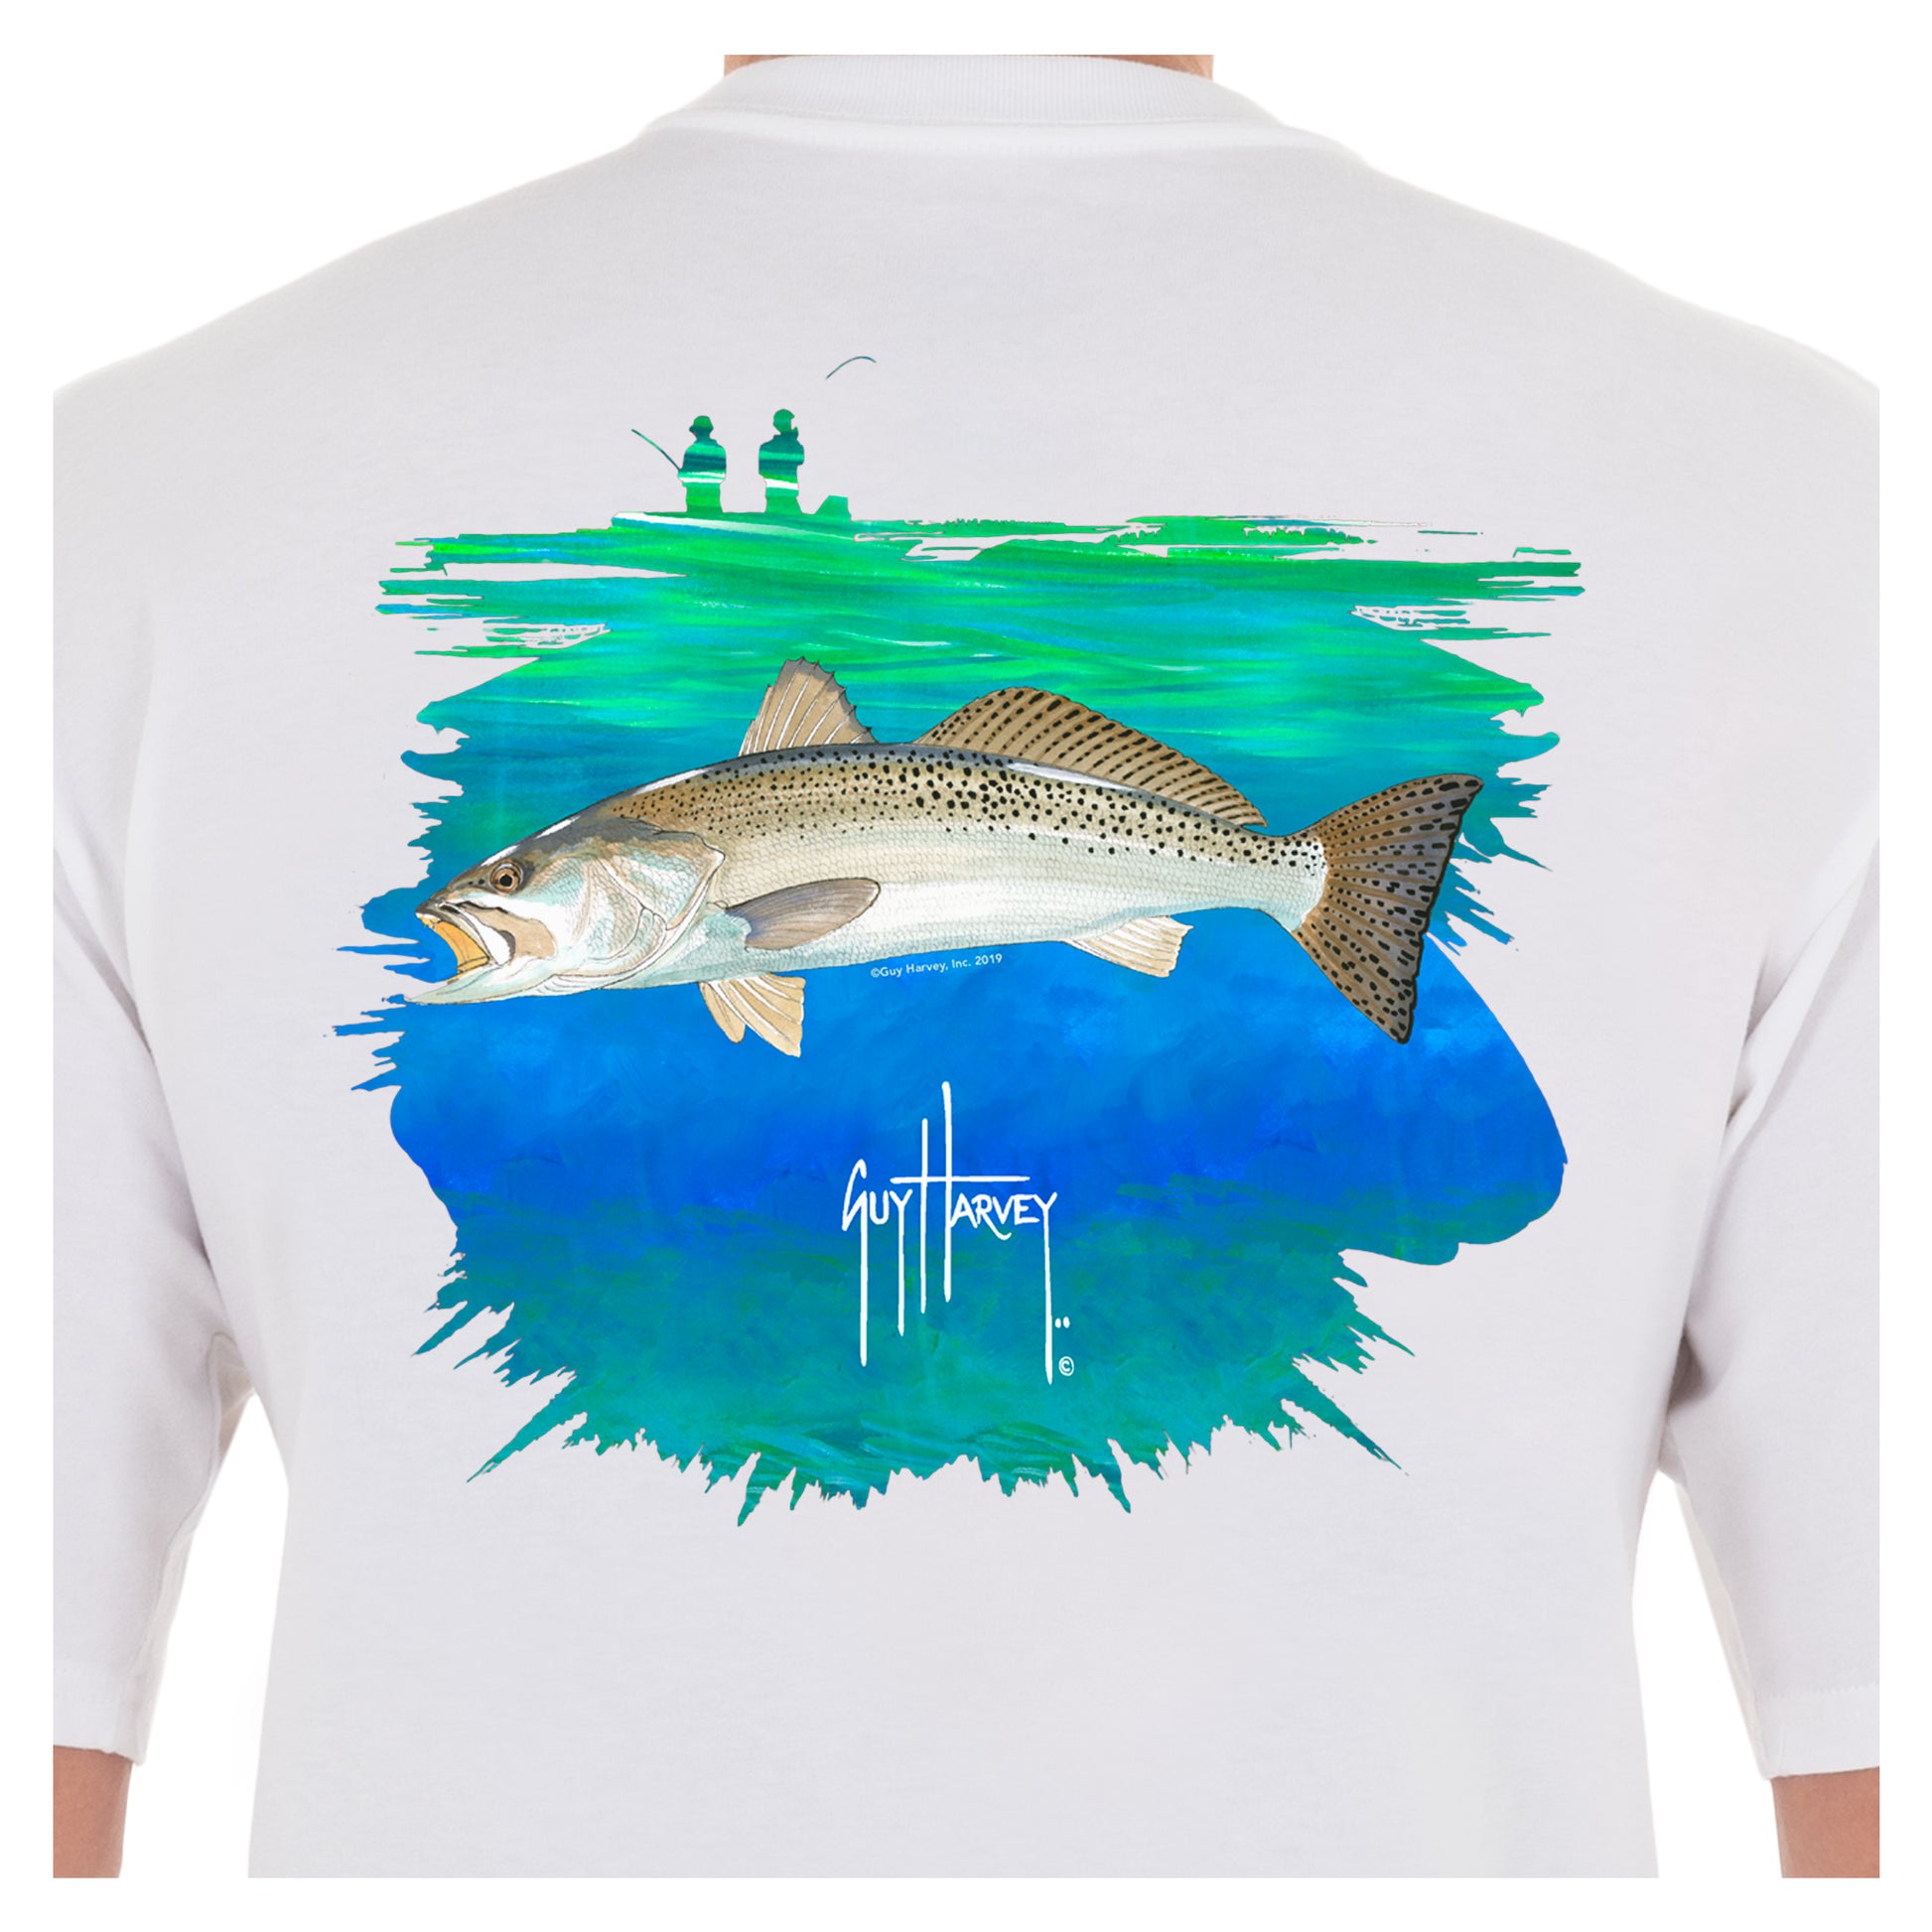 Guy Harvey Fishing Shirts in Fishing Clothing 